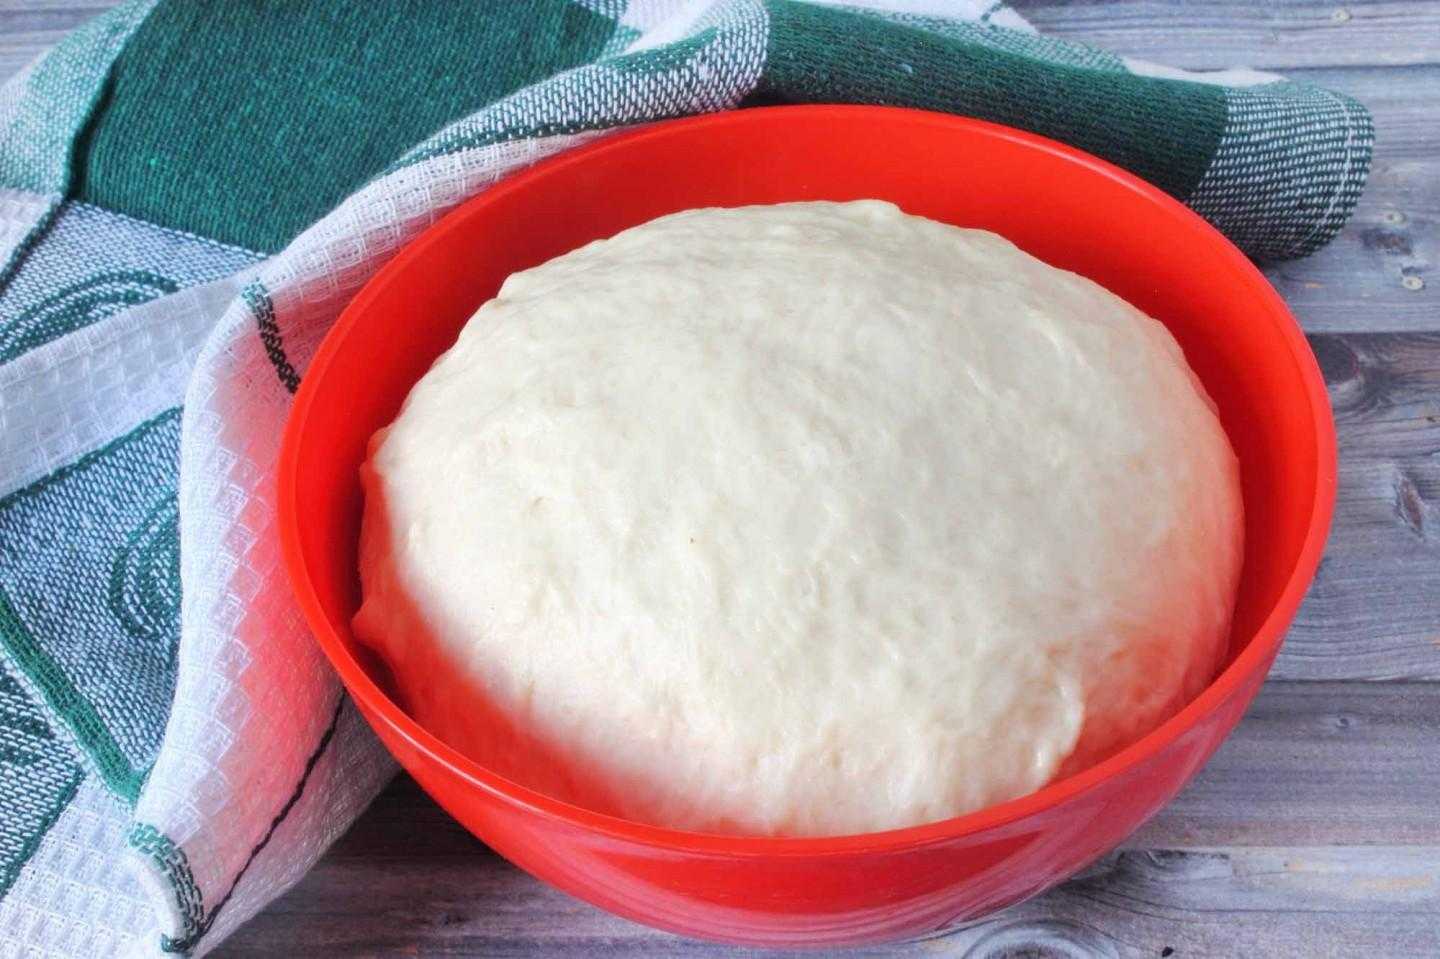 ️дрожжевое тесто на кефире для пирога в духовке, пирожков, булочек – рецепт без яиц